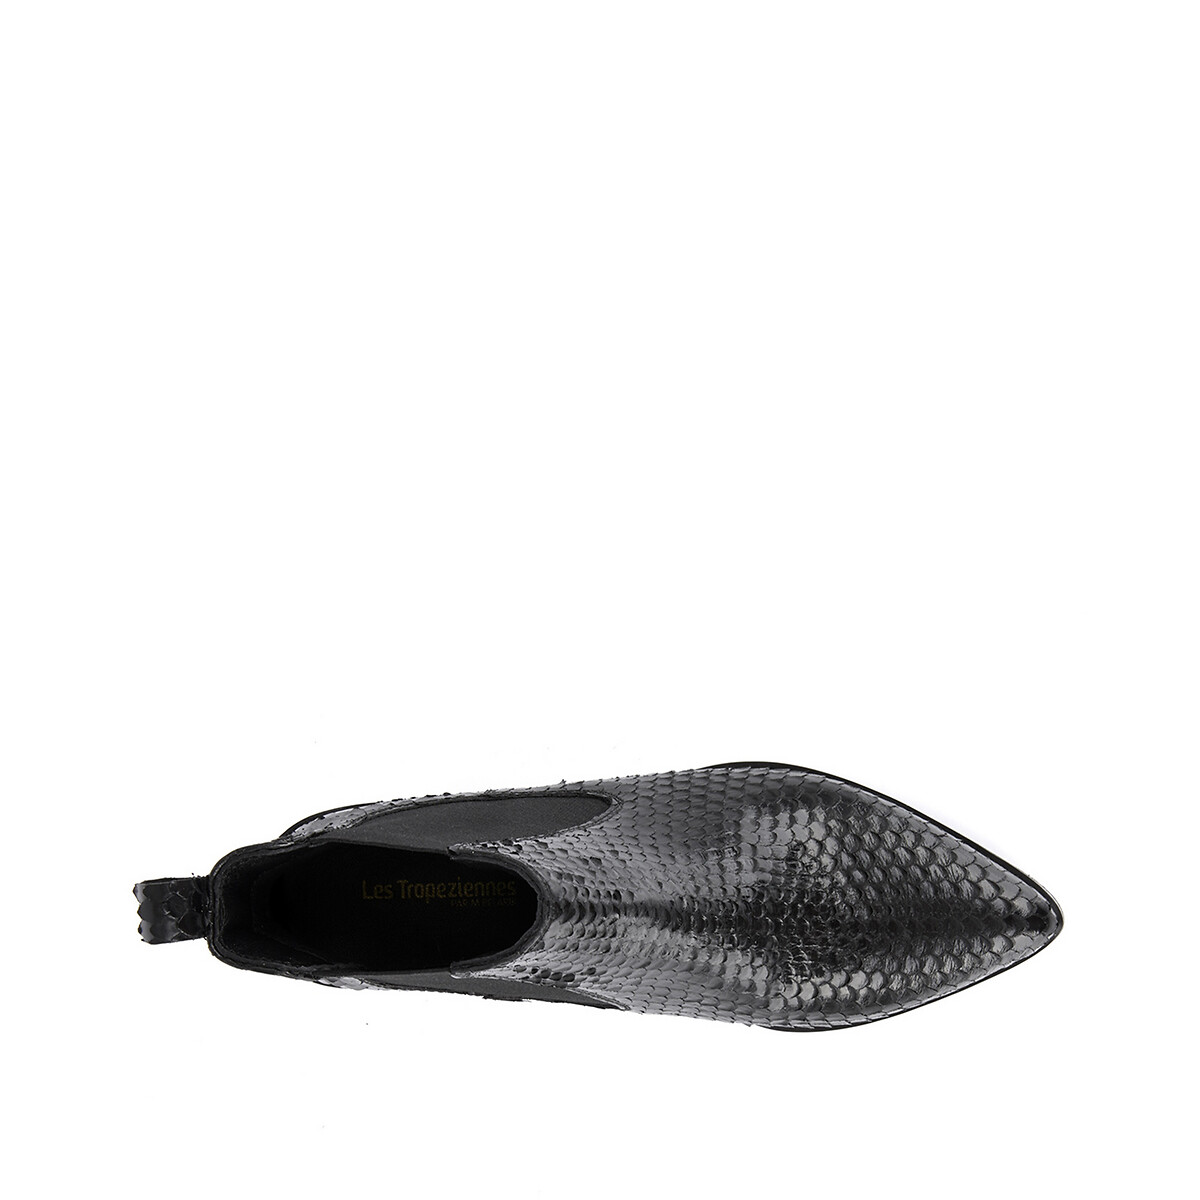 Ботинки La Redoute Под кожу питона Kiwi 36 черный, размер 36 - фото 3